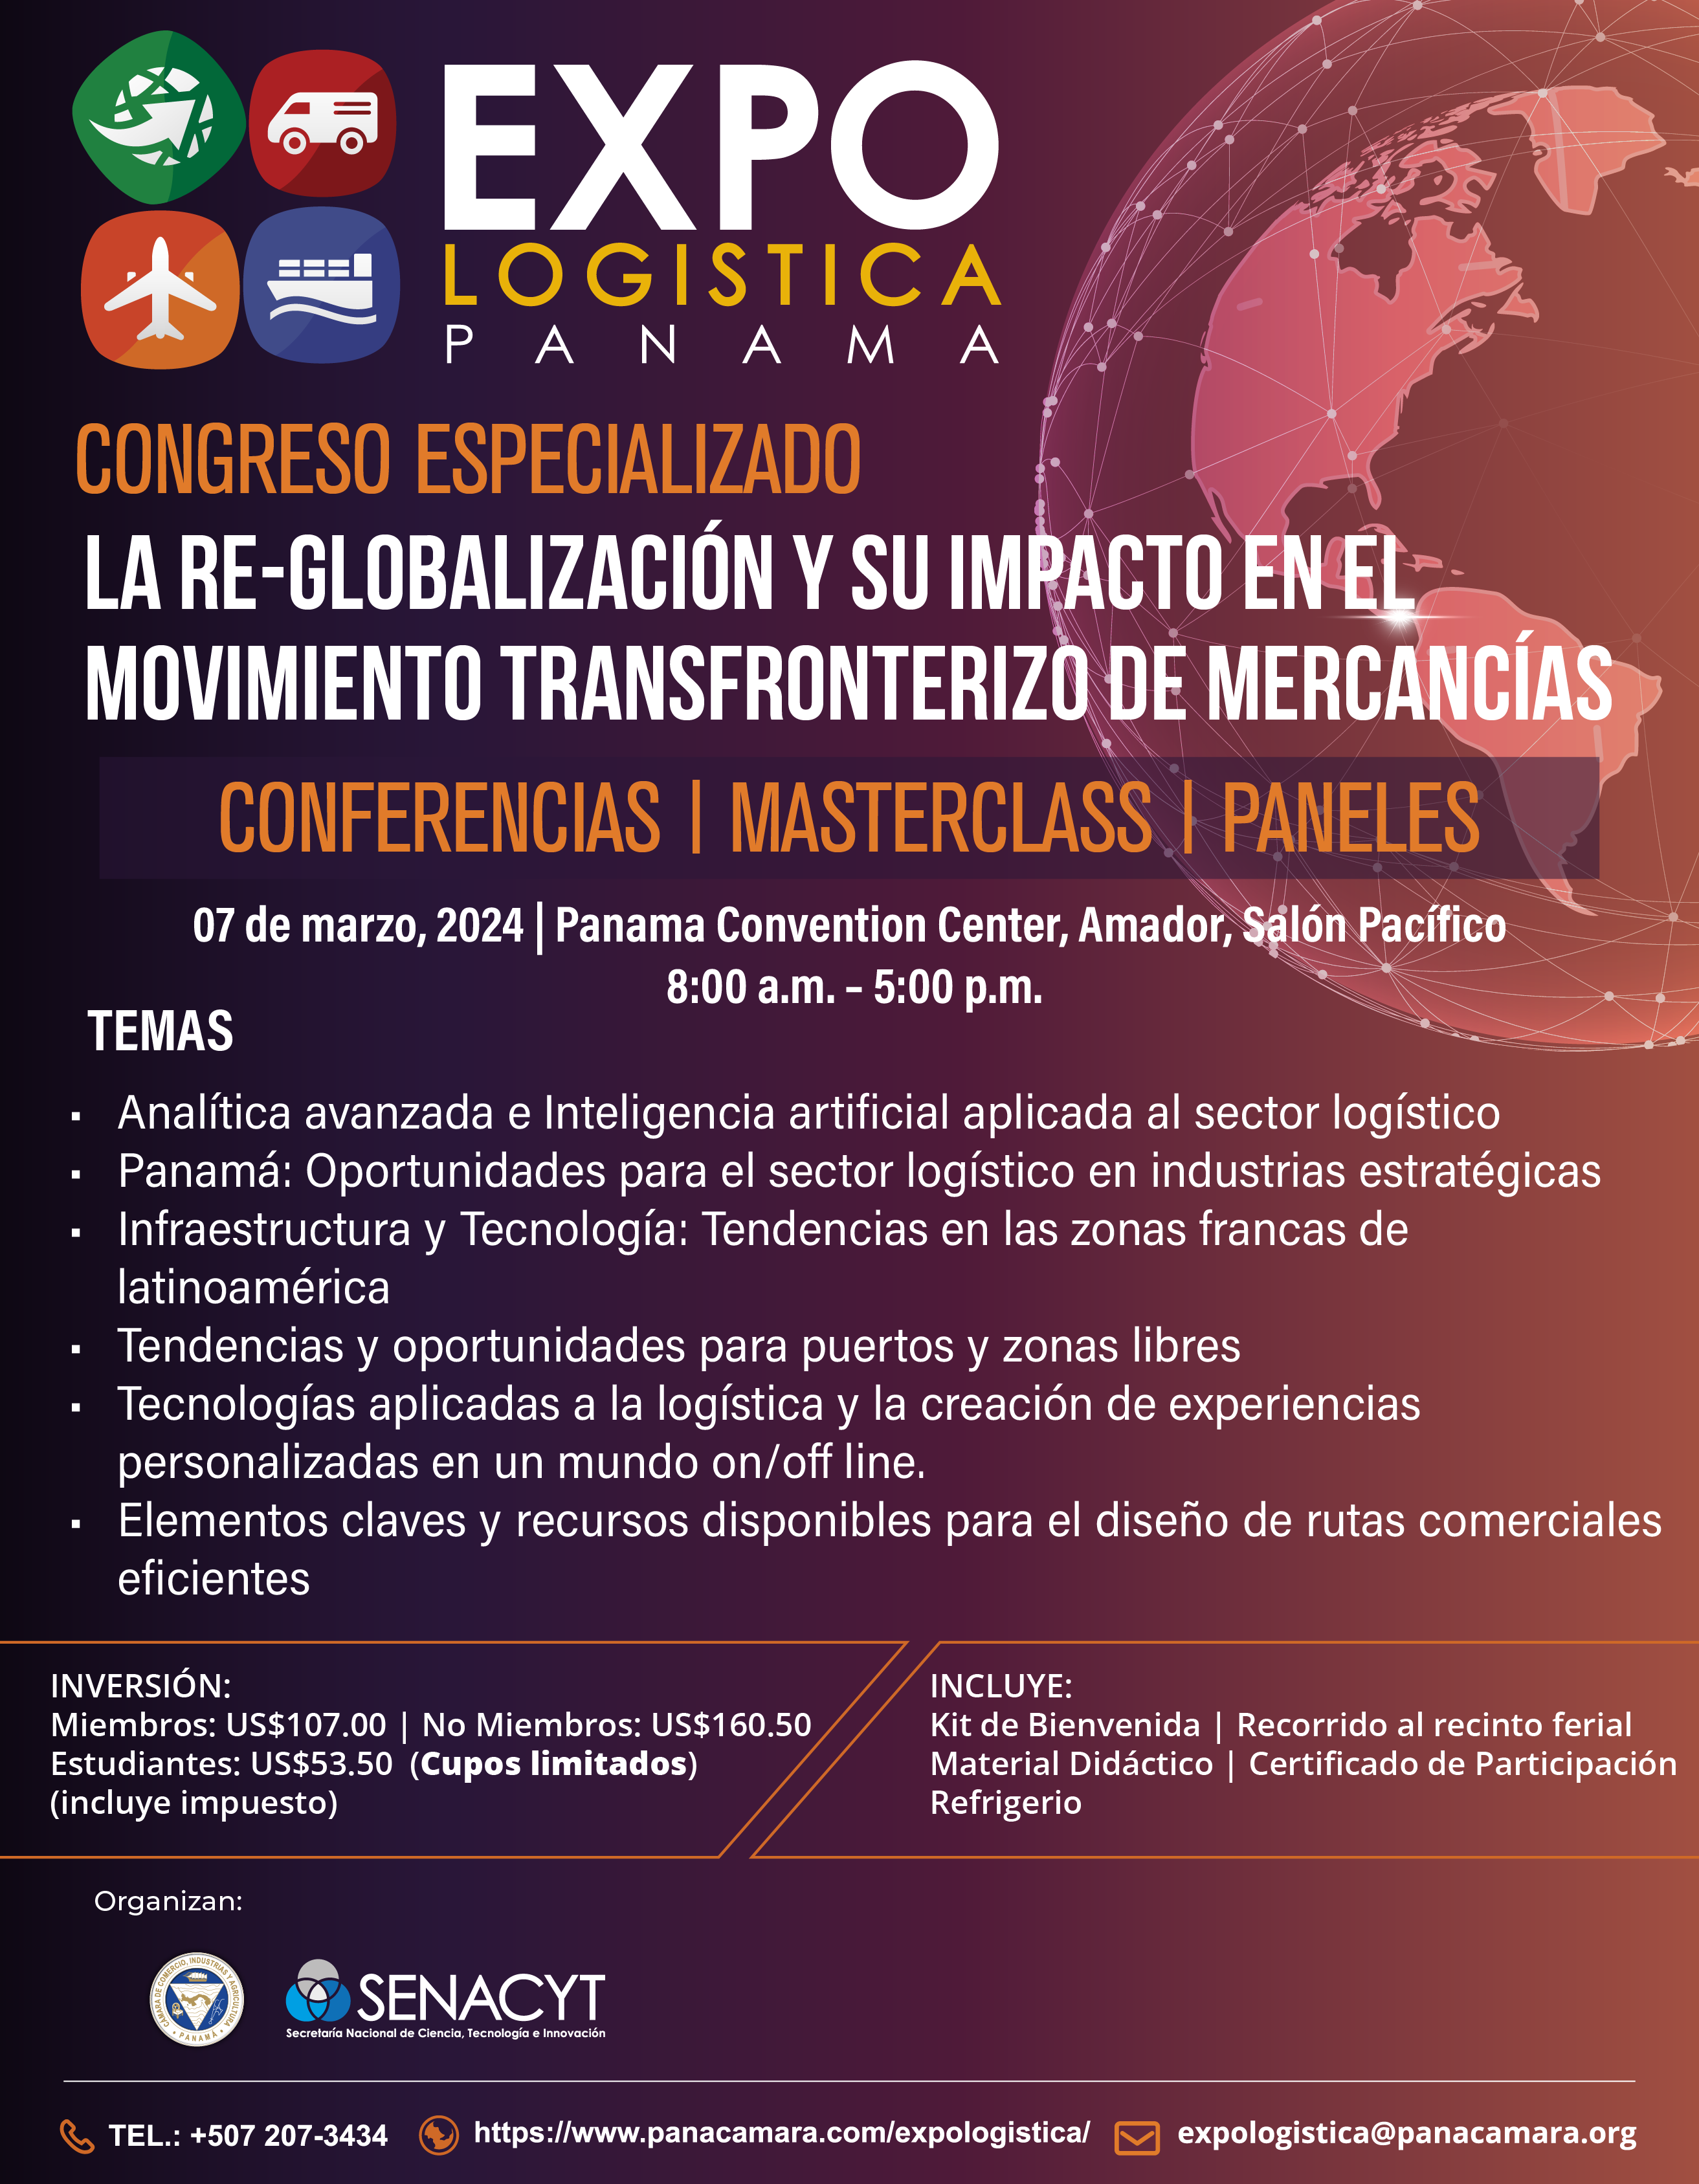 Congreso Especializado “La Re-Globalización y su impacto en el movimiento transfronterizo de mercancías”